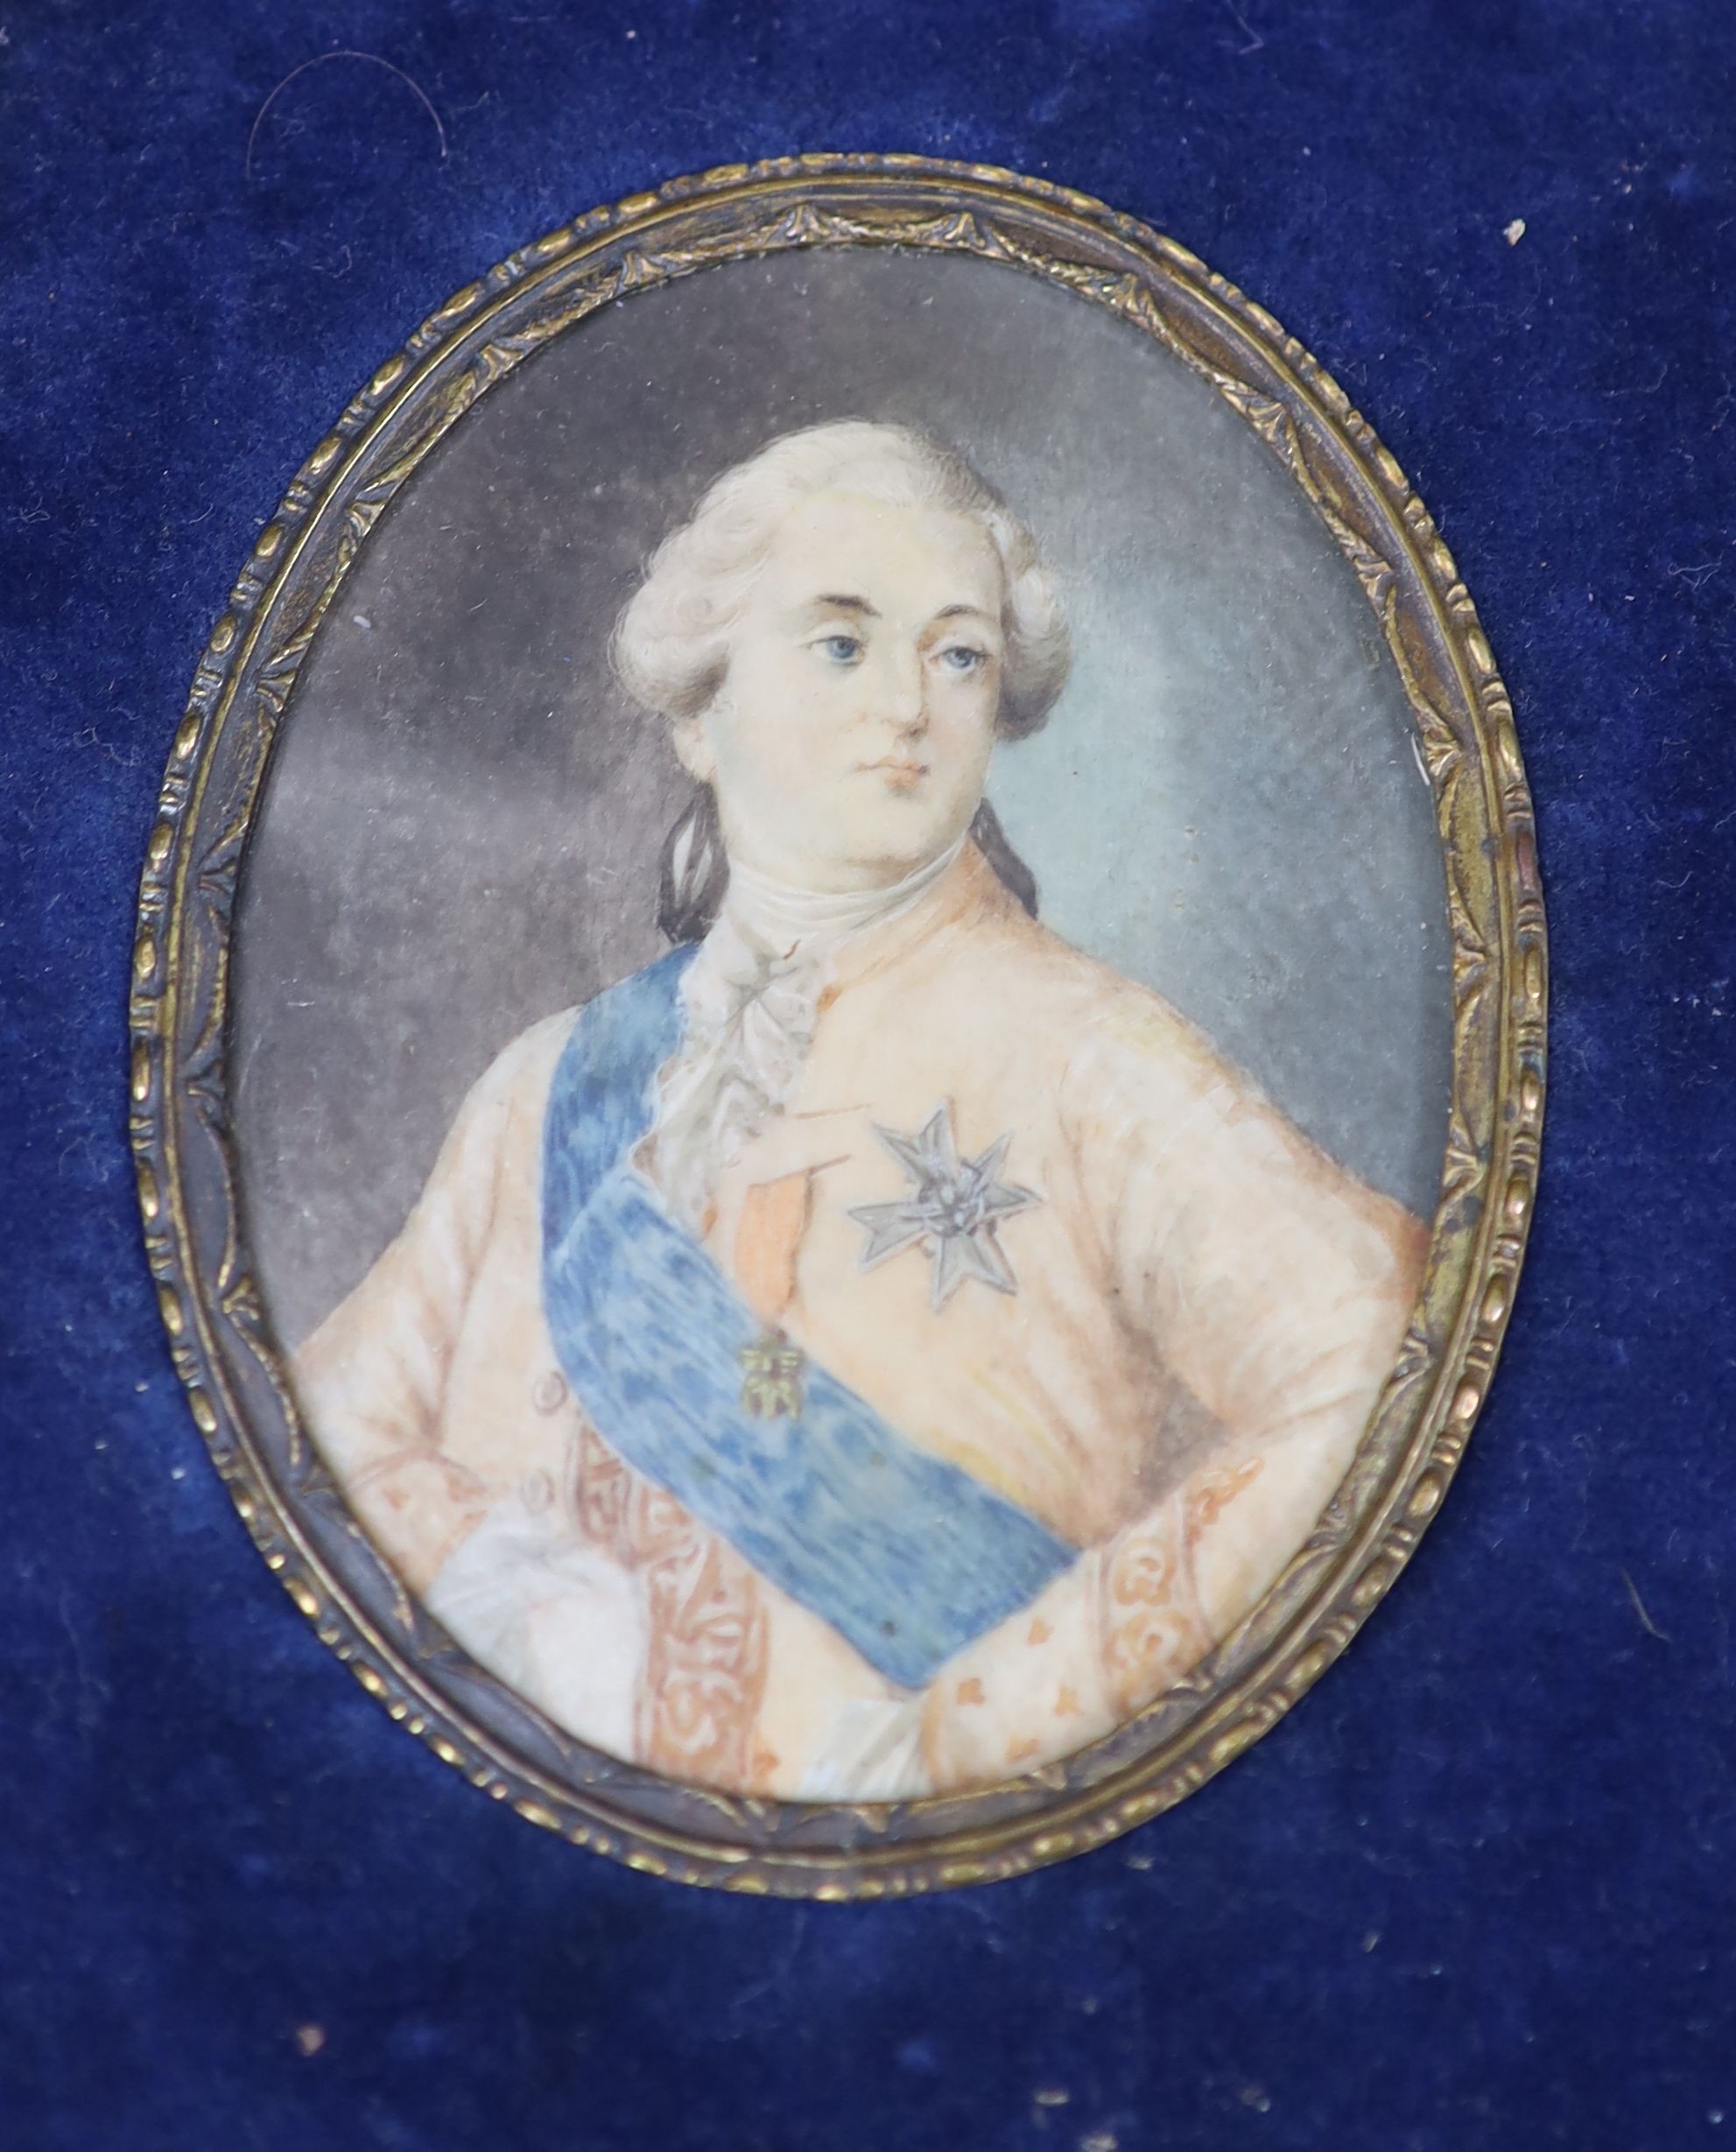 A group of three portrait miniatures, Louis XVI, Marie Antoinette & Monsieur Gillotine, largest 13.5 x 9.5cm.